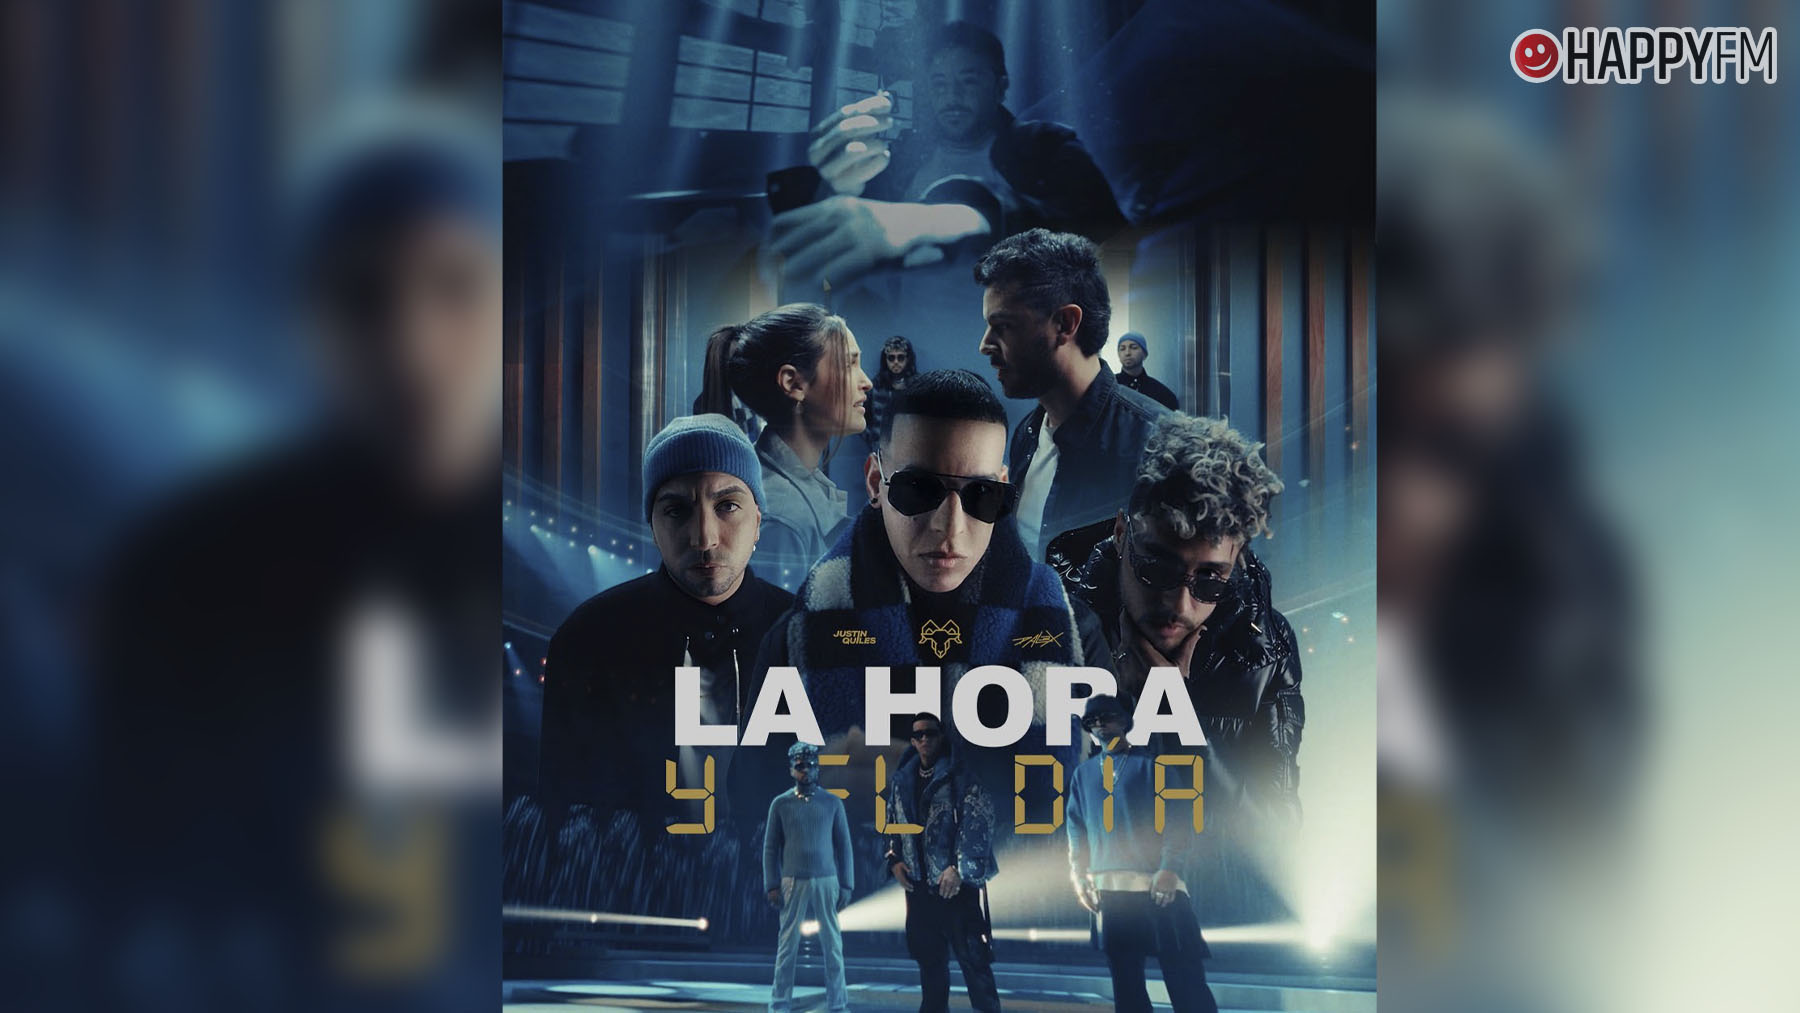 ‘La hora y el día’, de Daddy Yankee, Justin Quiles y Dalex: letra y vídeo